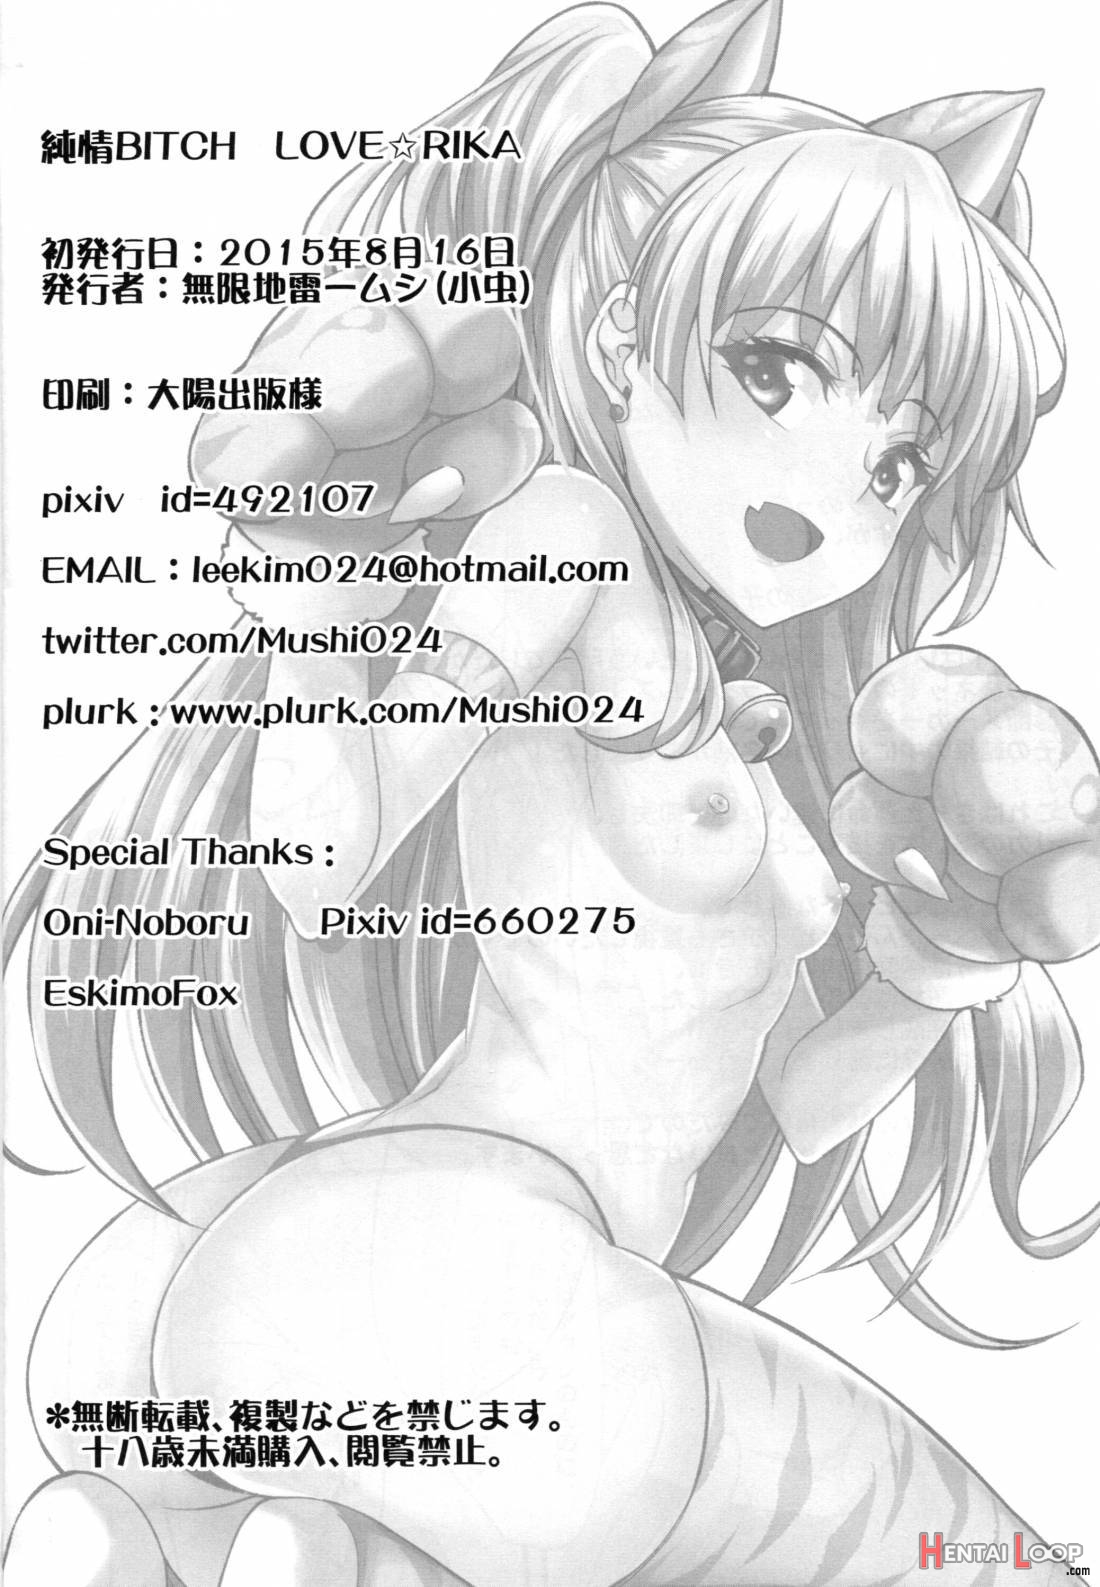 Junjou Bitch Love Rika page 25